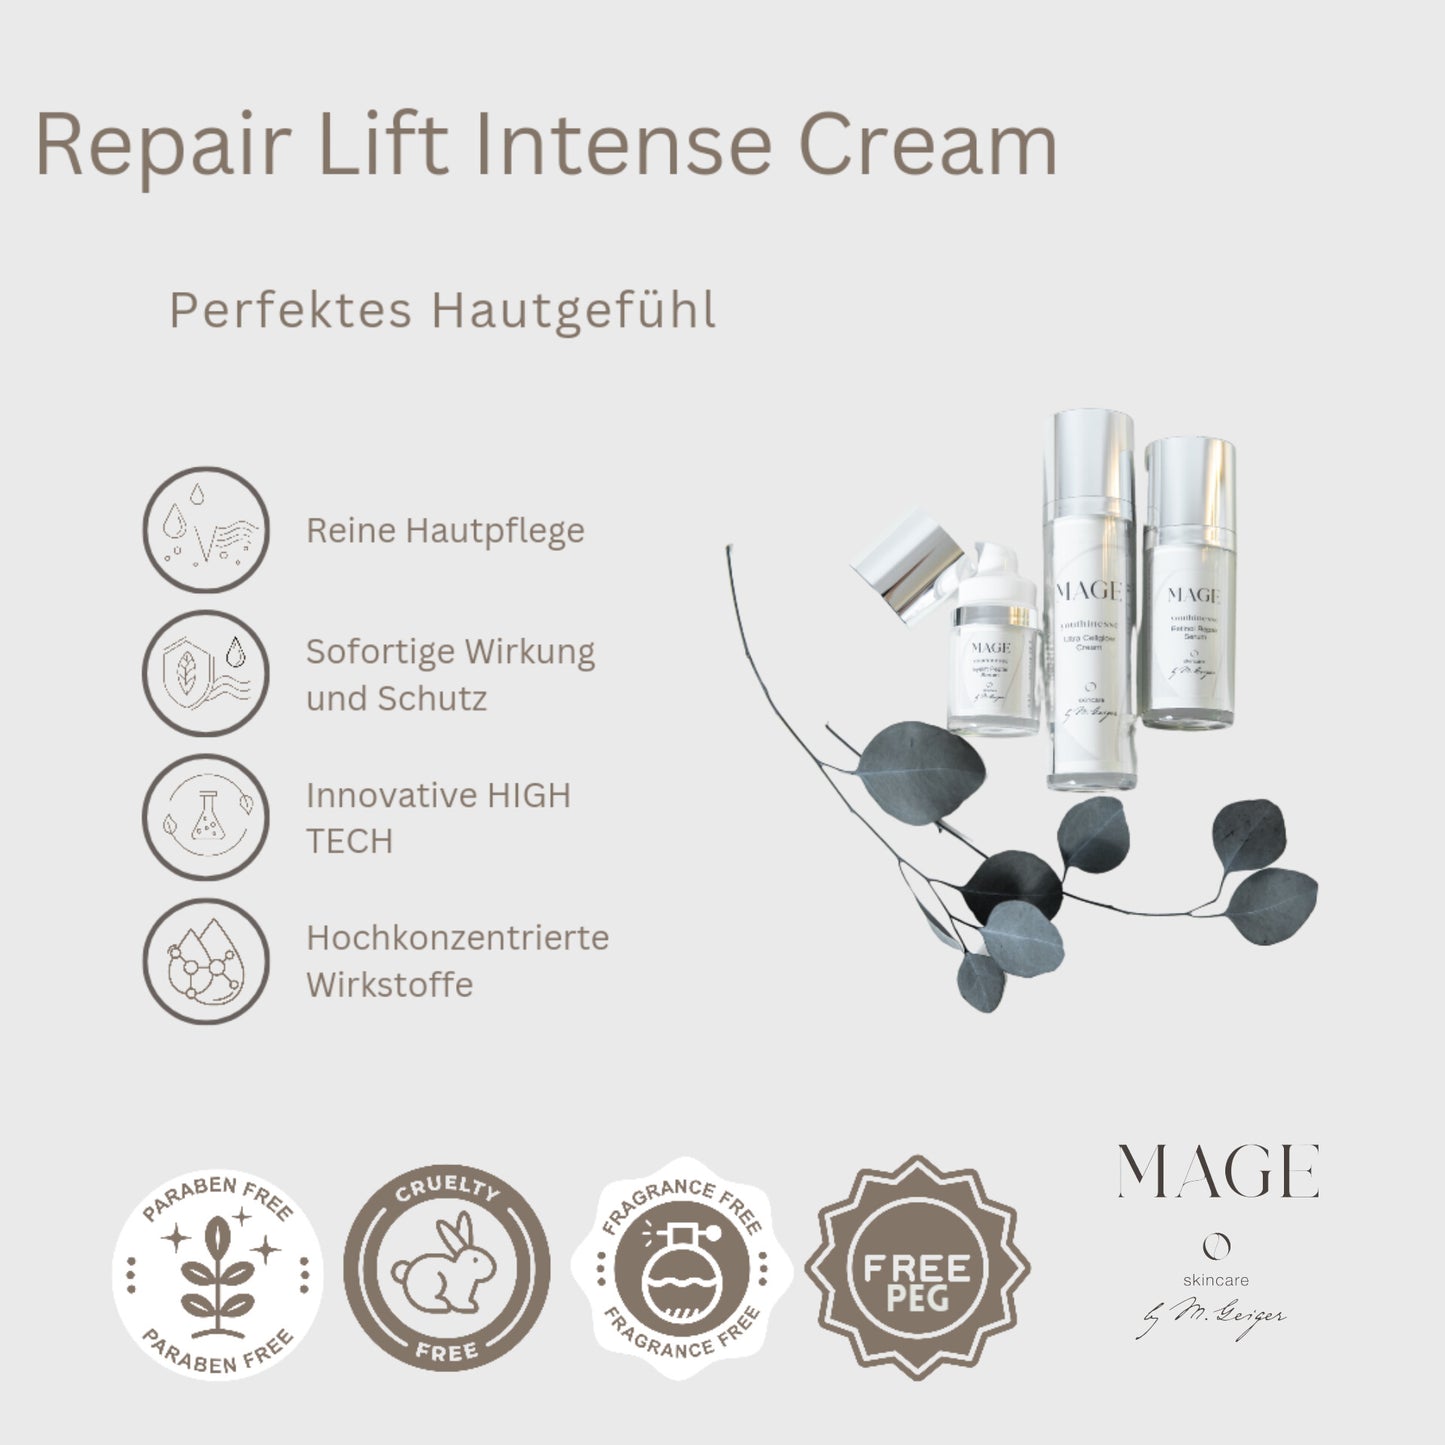 Repair Lift Intense Cream verleiht Glow liftet mit Bio BTX, repariert und versorgt Hautzellen, für trockene Haut mit Viaminen